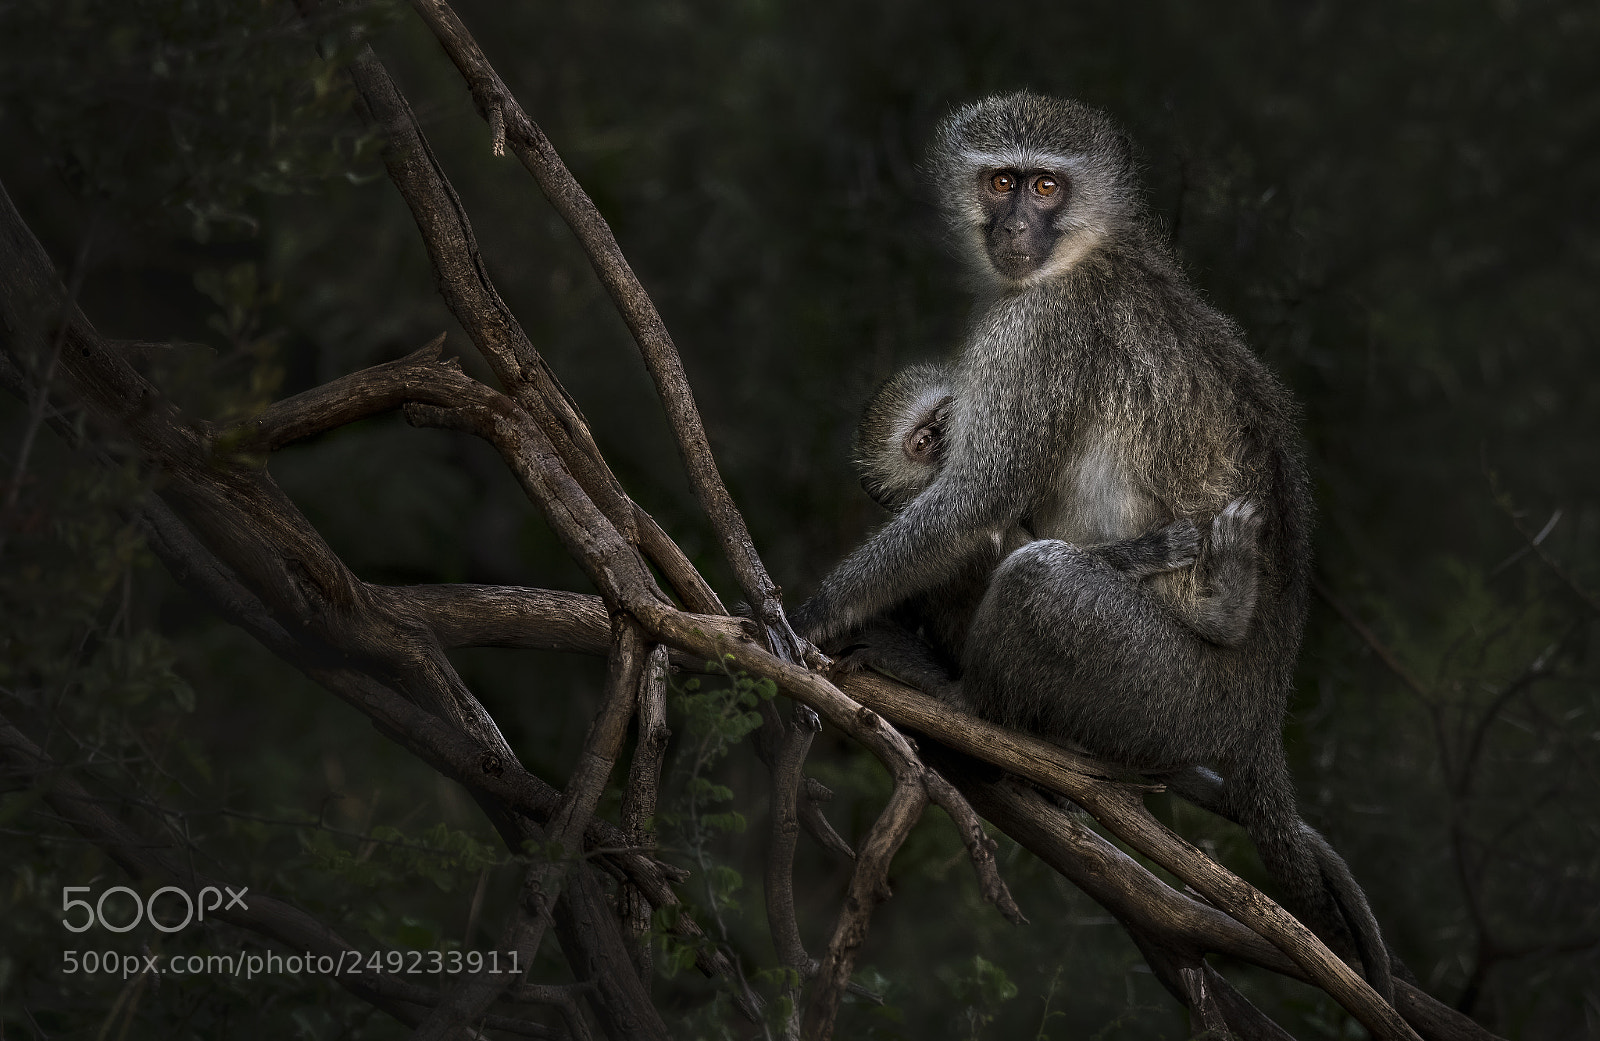 Nikon D500 sample photo. Vervet monkey photography